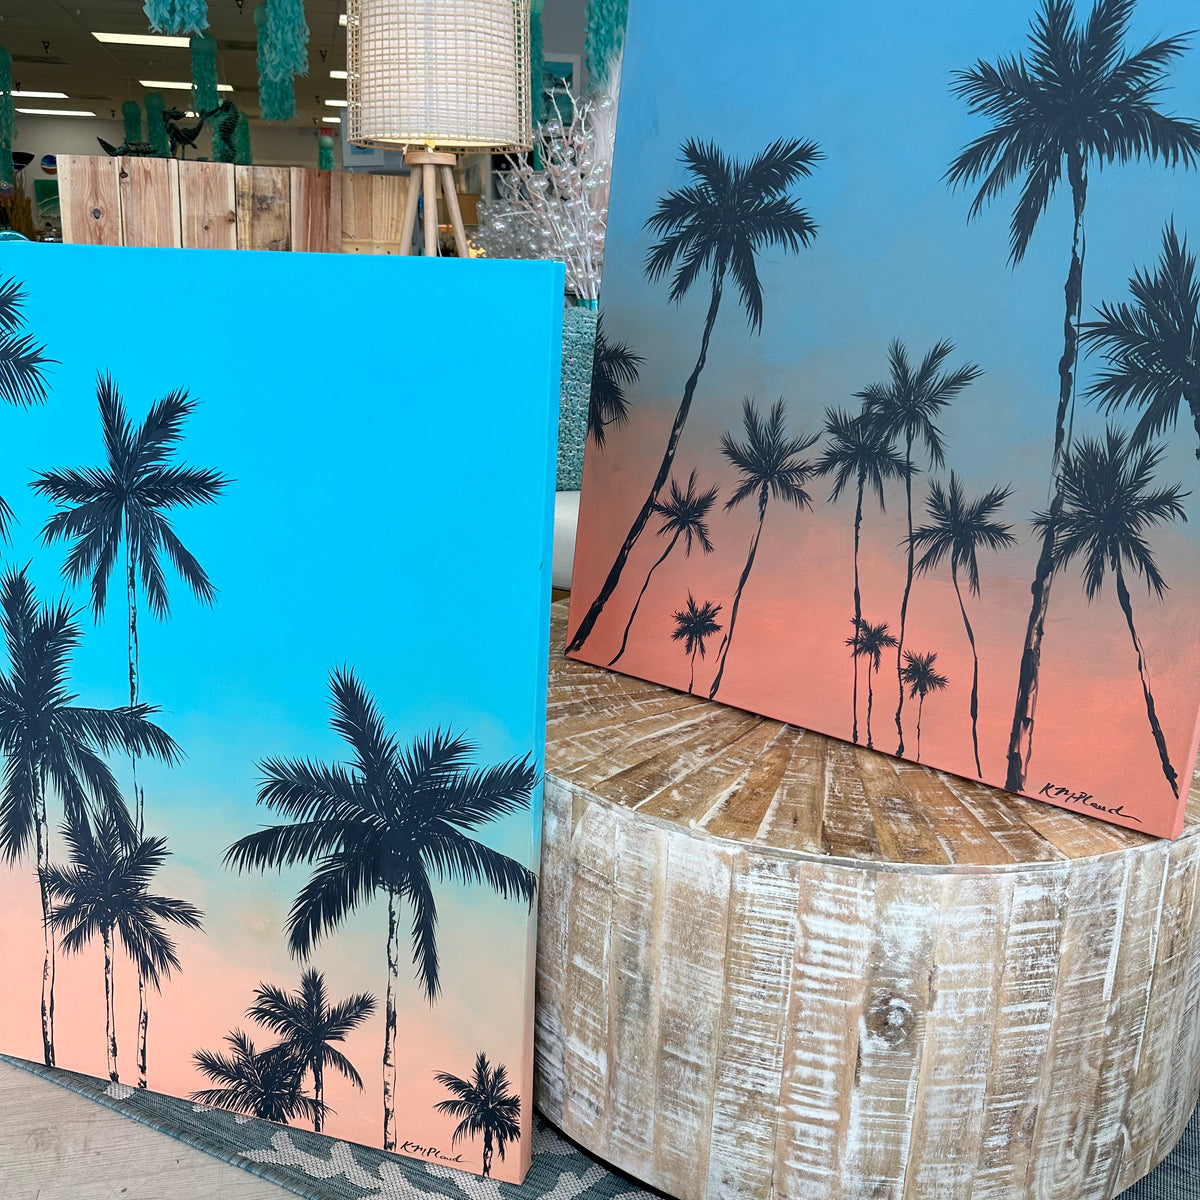 30"x 40" Original Palm Tree Painting